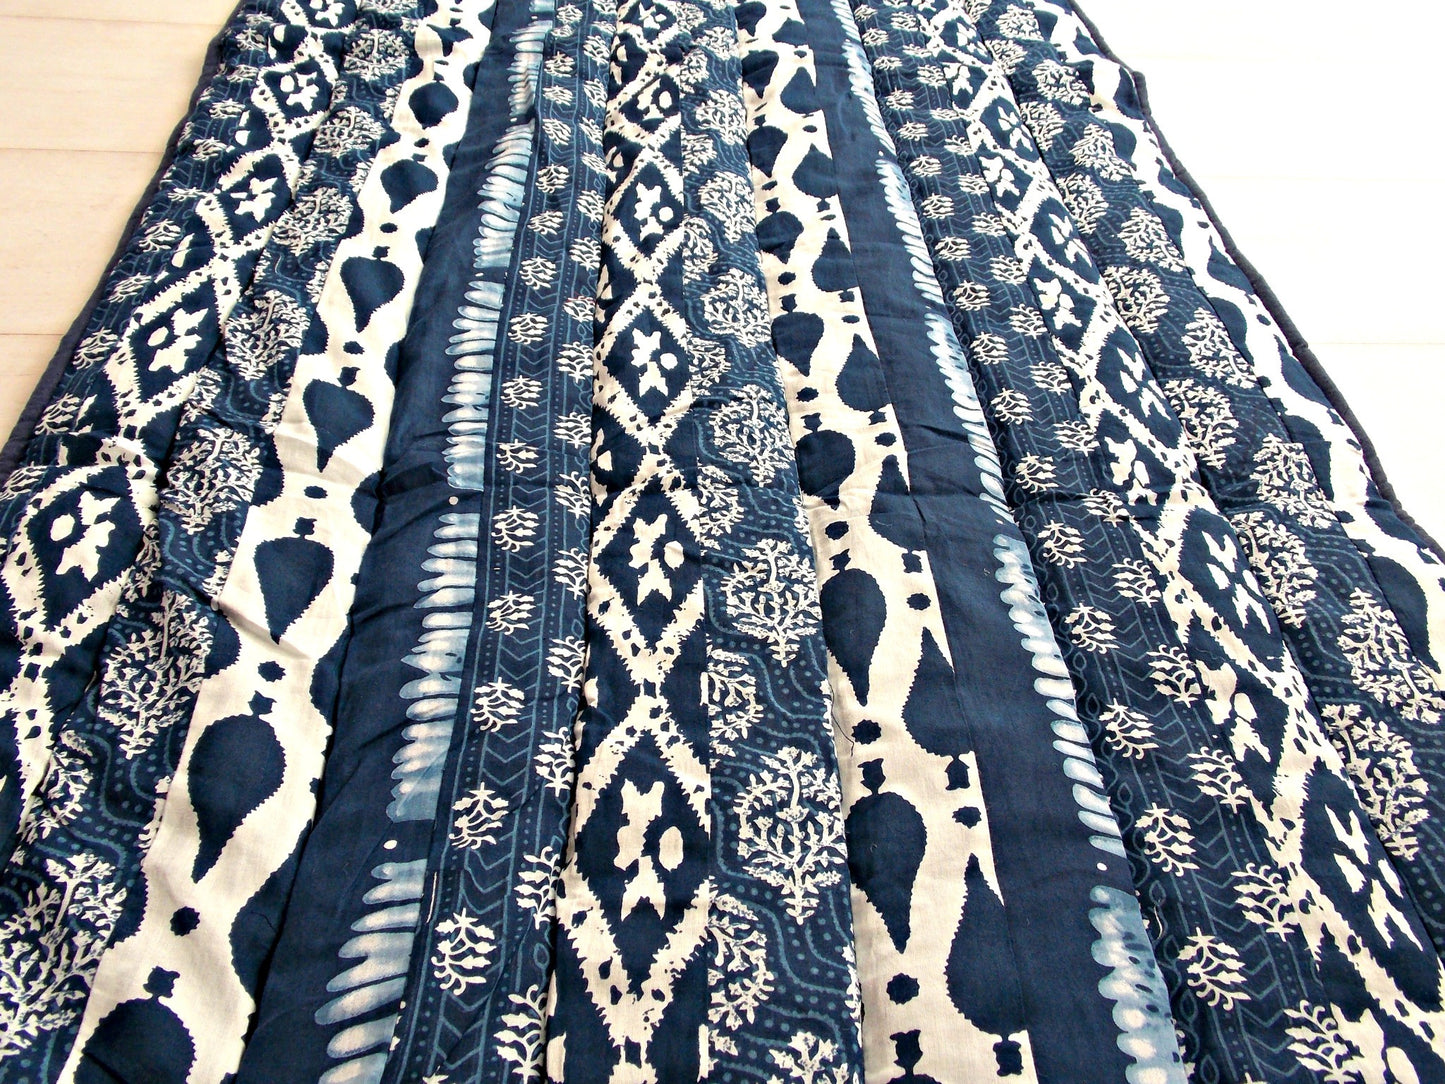 Blue Medley Yoga Mat - Patchwork Stripes - An Indian Summer